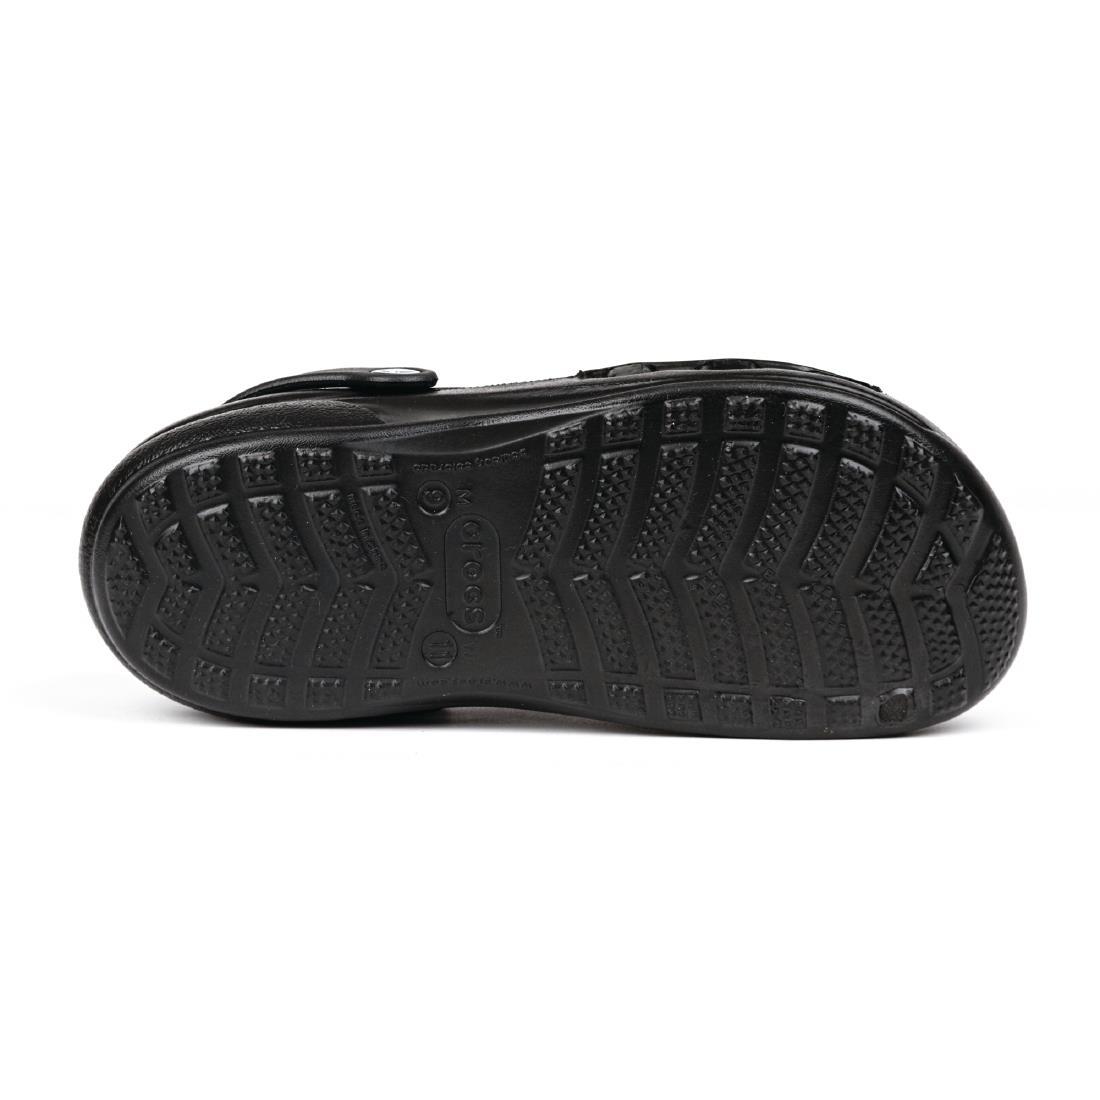 Crocs Specialist Vent Clogs Black 41.5 - A478-41.5  - 4